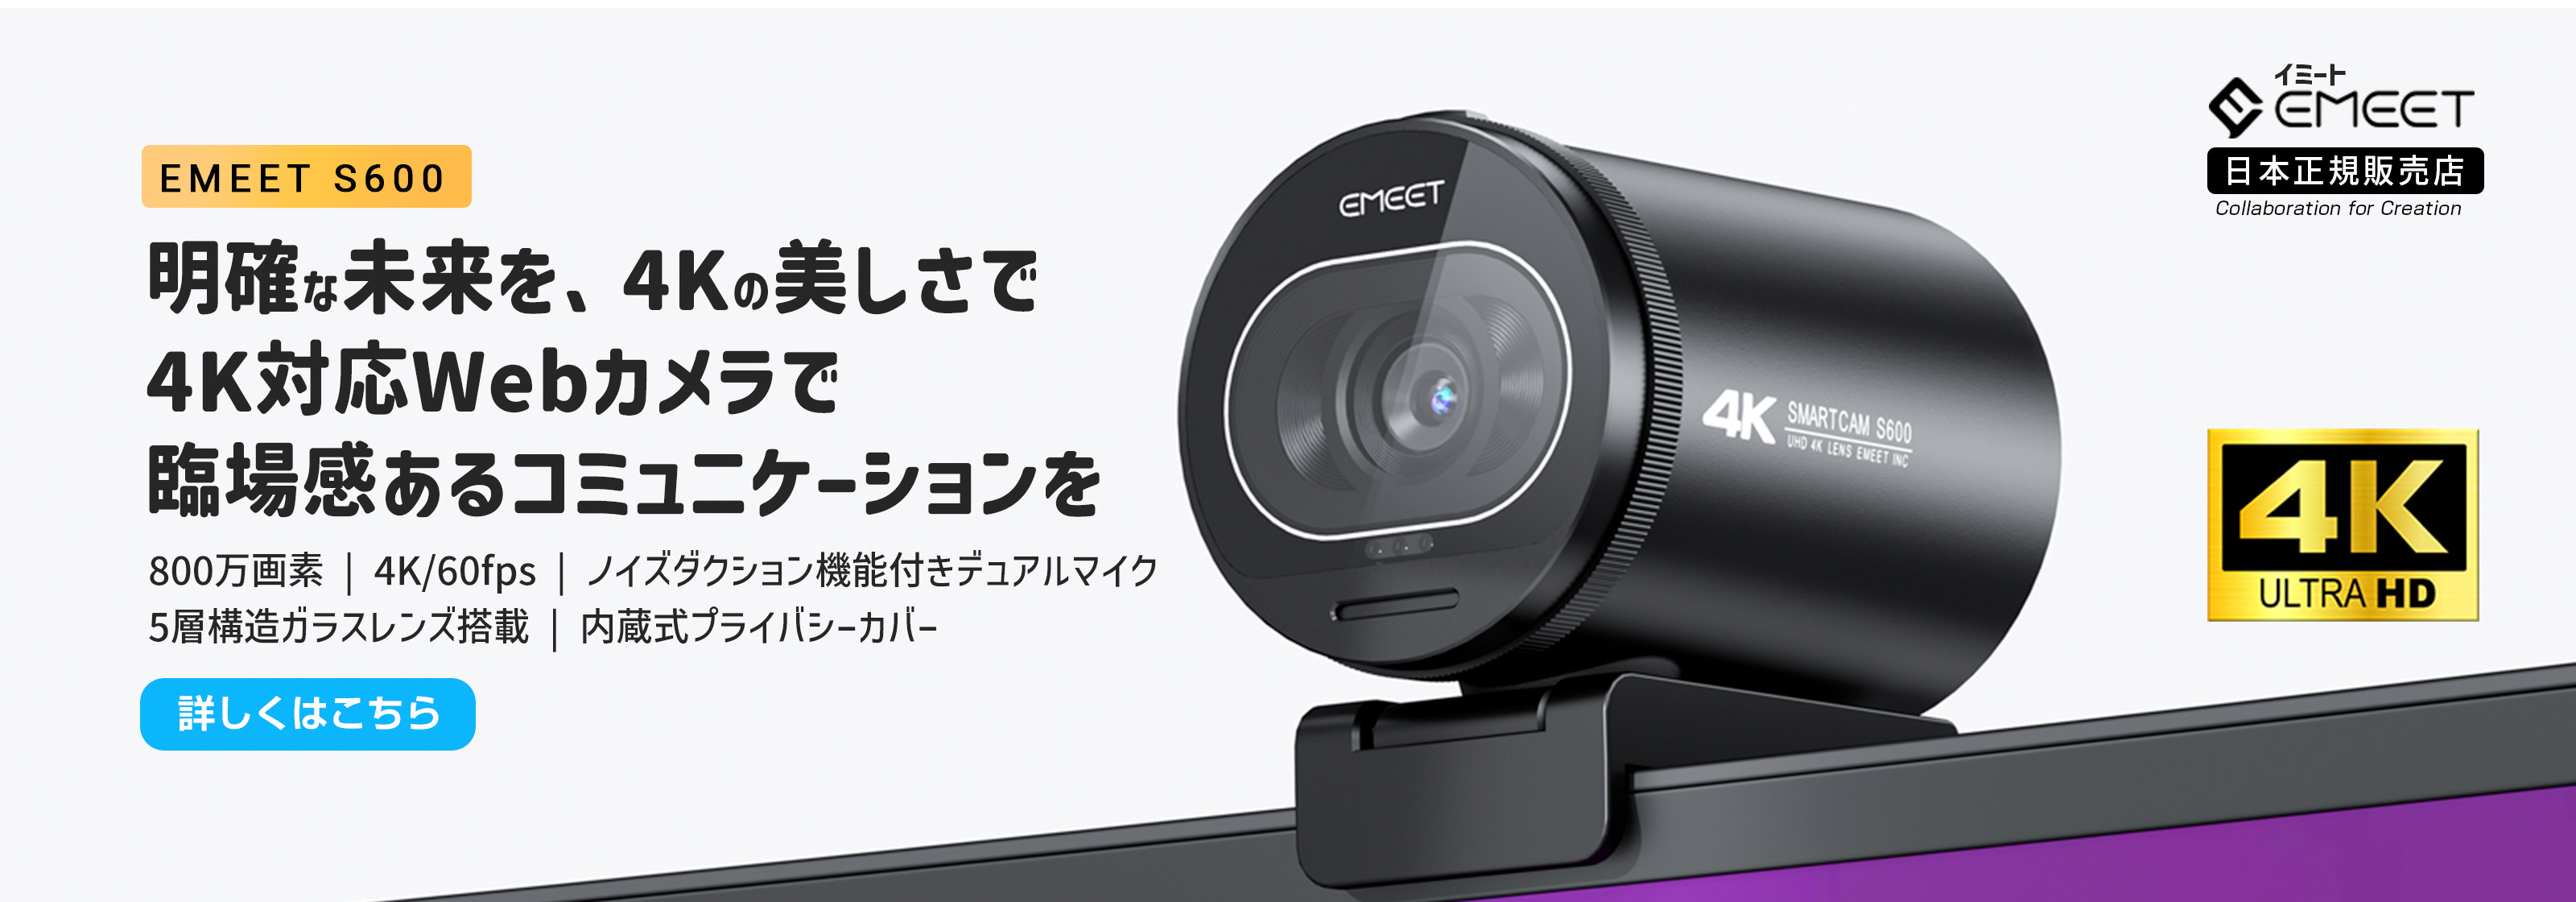 EMEET S600 4K対応 Webカメラ